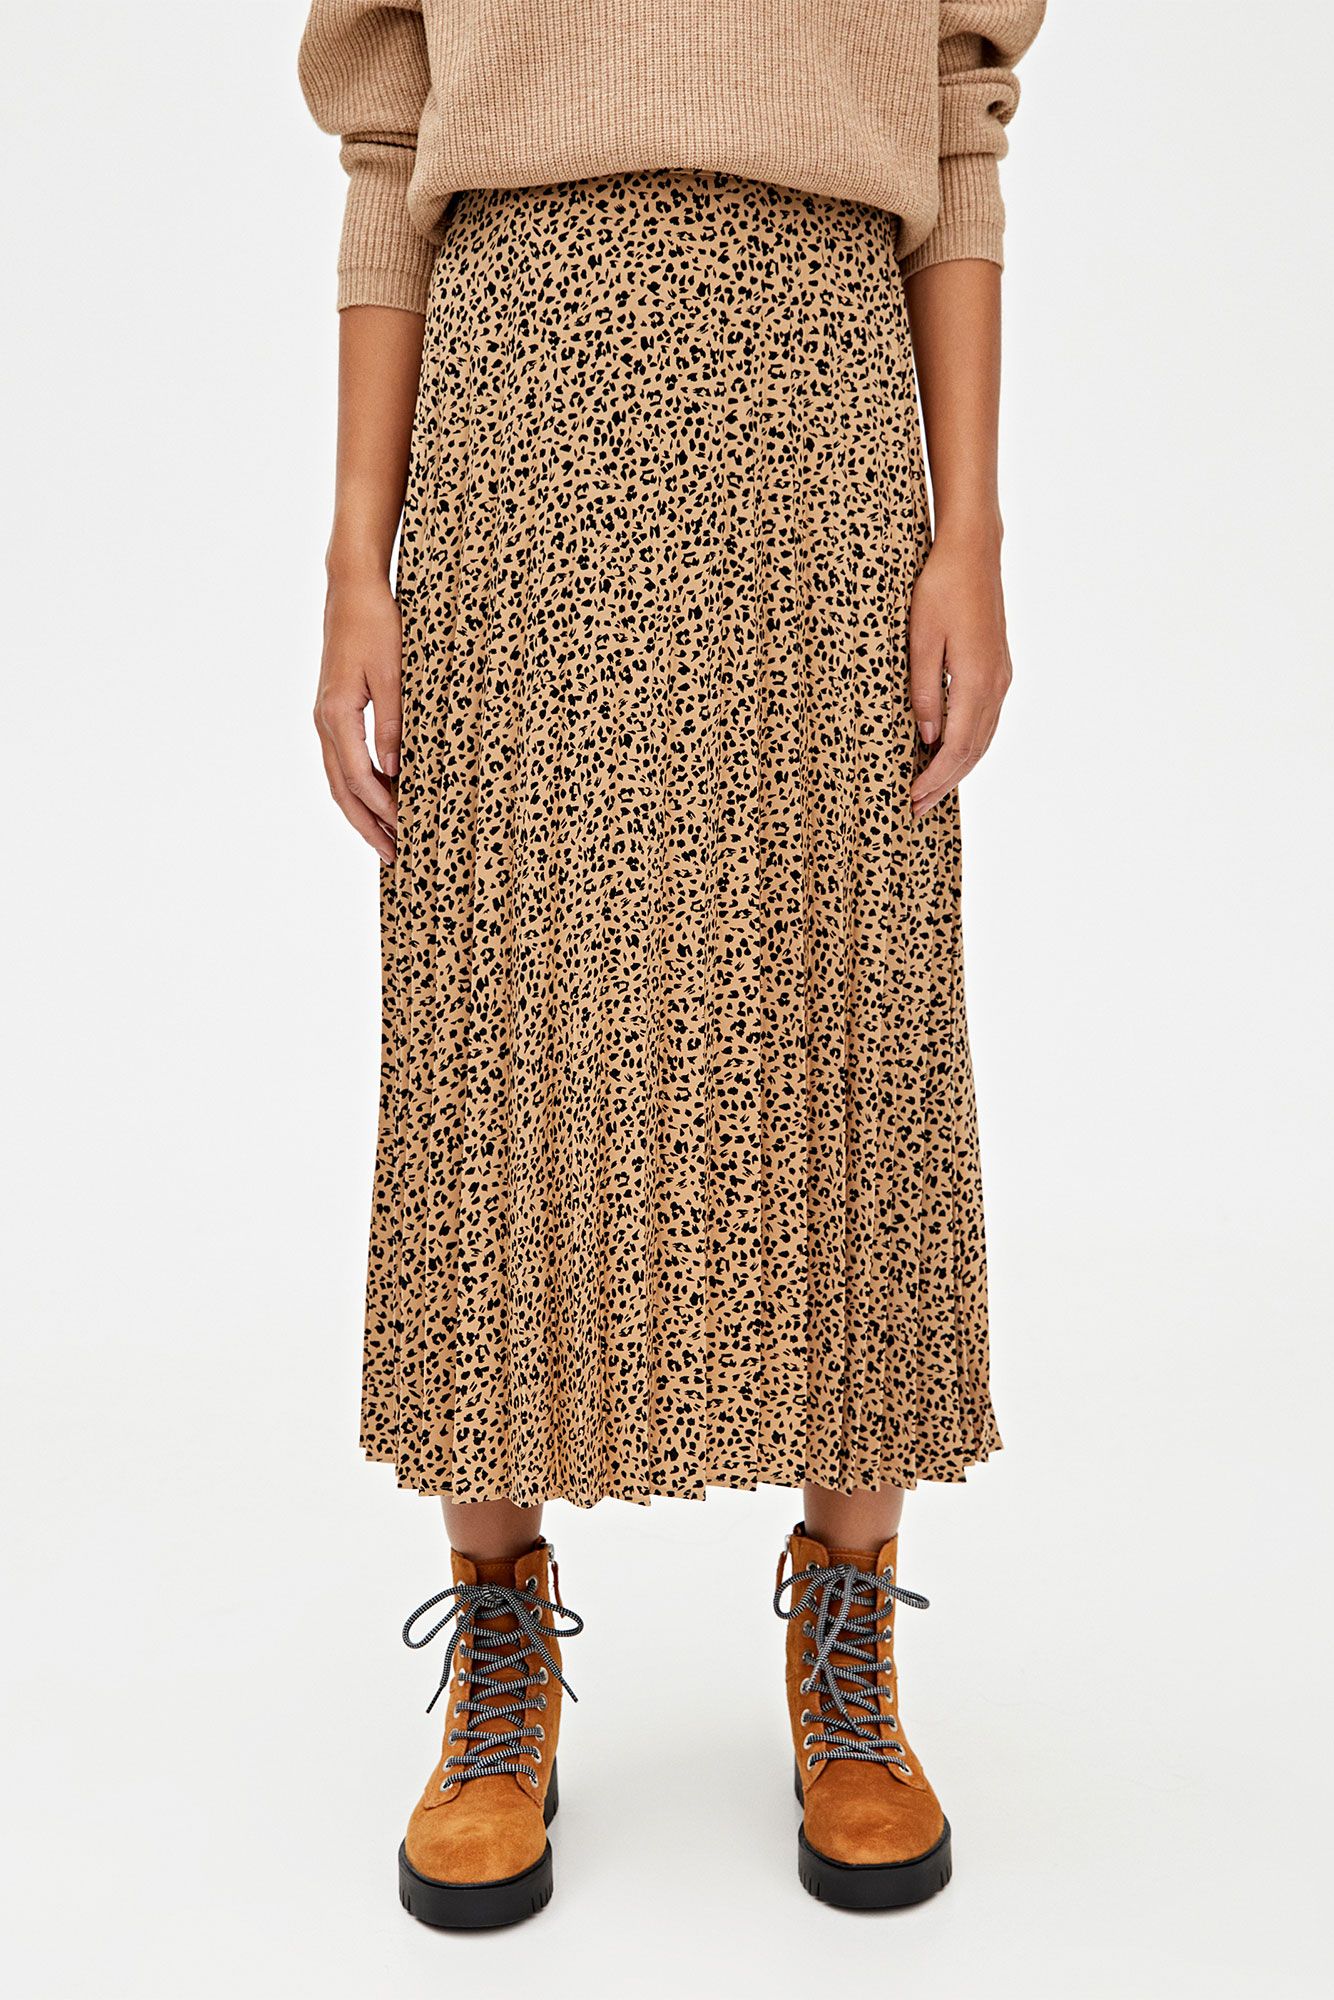 Hay una necesidad de Leer Significativo La falda larga de leopardo de Pull&Bear que llevarás con botas